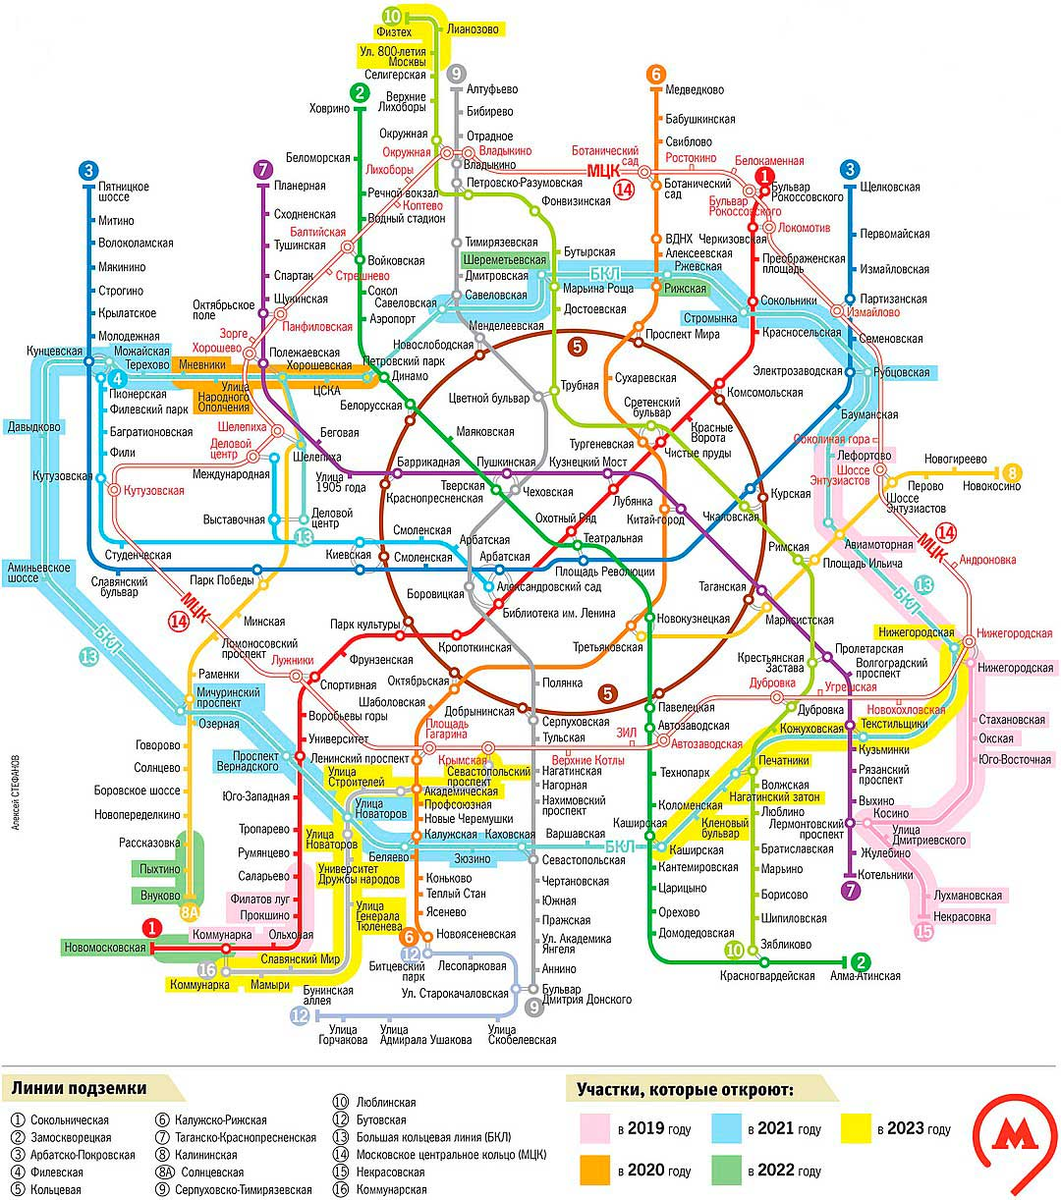 Московское метро как пишется с большой. Схема Московского метрополитена 2021 новая. Схема метрополитена на карте Москвы 2021. Метро Москва схема 2021. Метро Москвы схема 2021 с новыми станциями 2021.